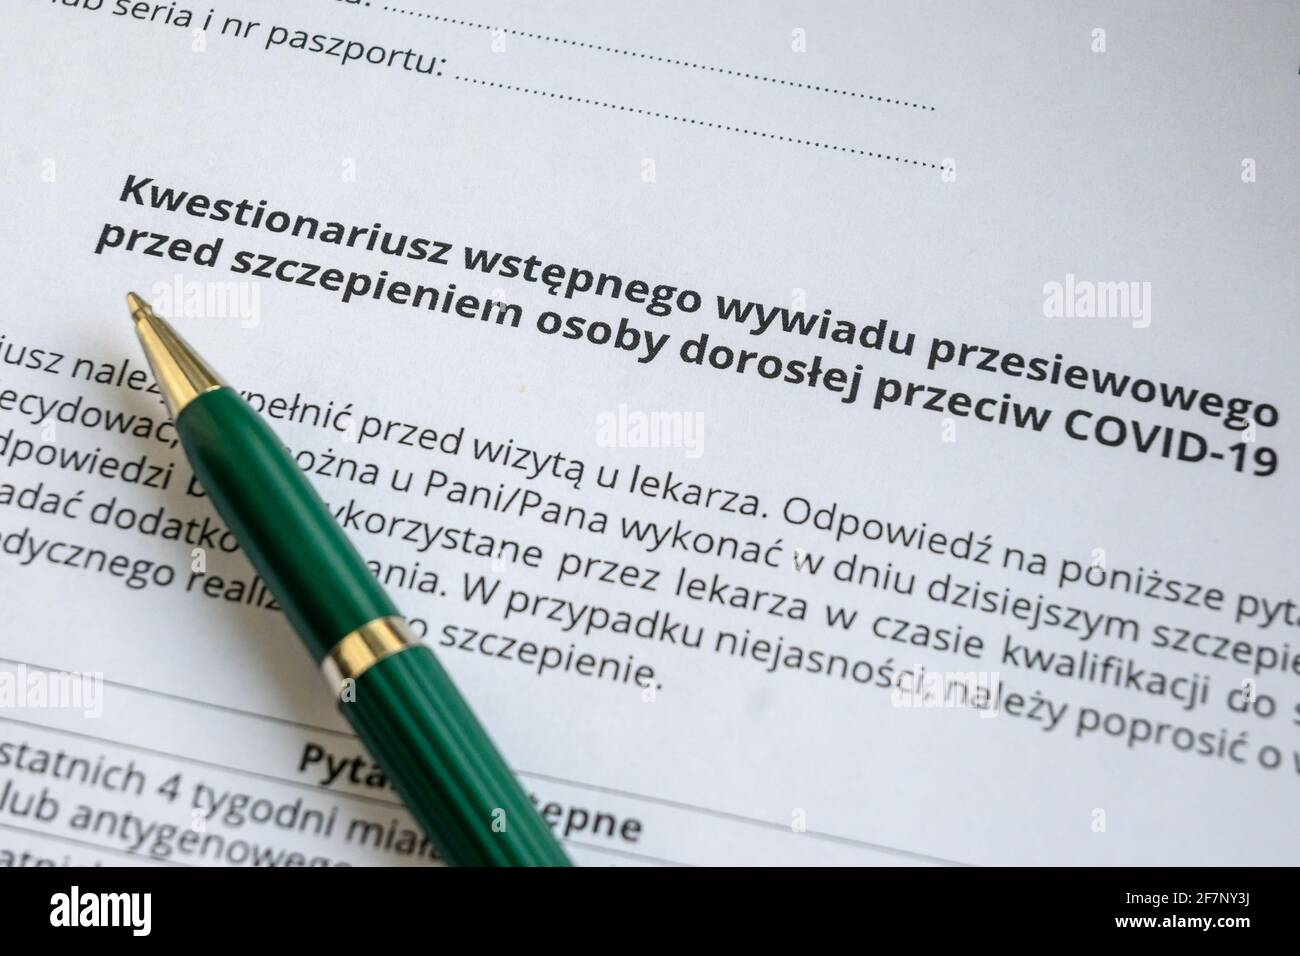 Gdansk, Polonia - 9 de abril de 2021: Cuestionario de salud polaco para la vacunación contra Covid-19 Foto de stock